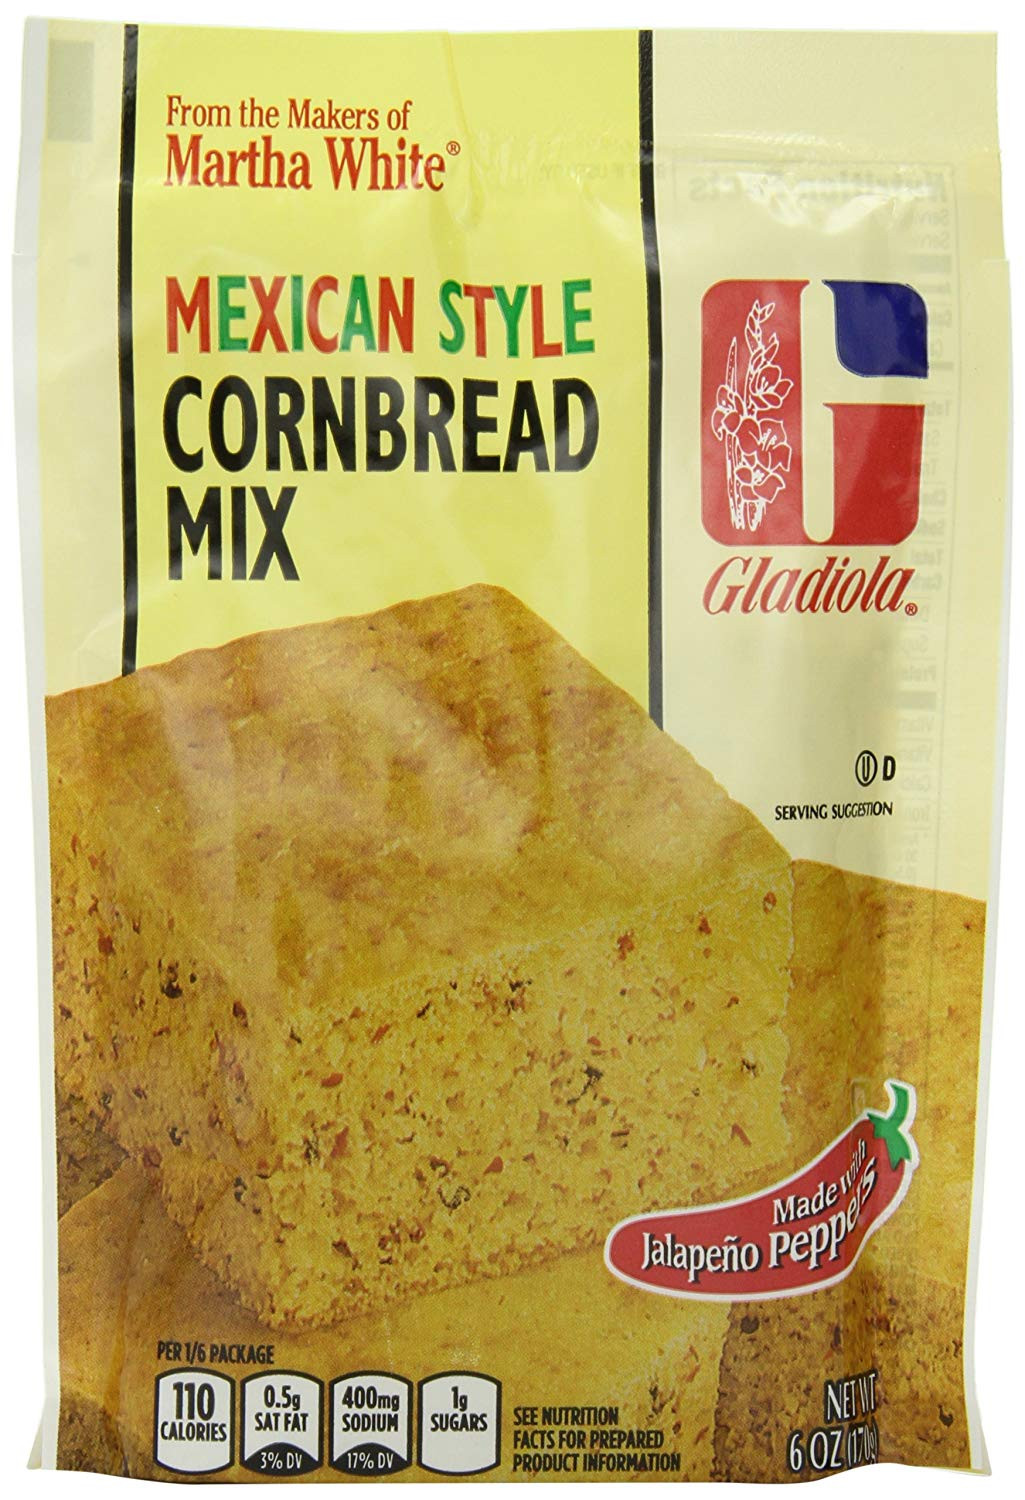 Martha White Mexican Cornbread
 mexican style cornbread